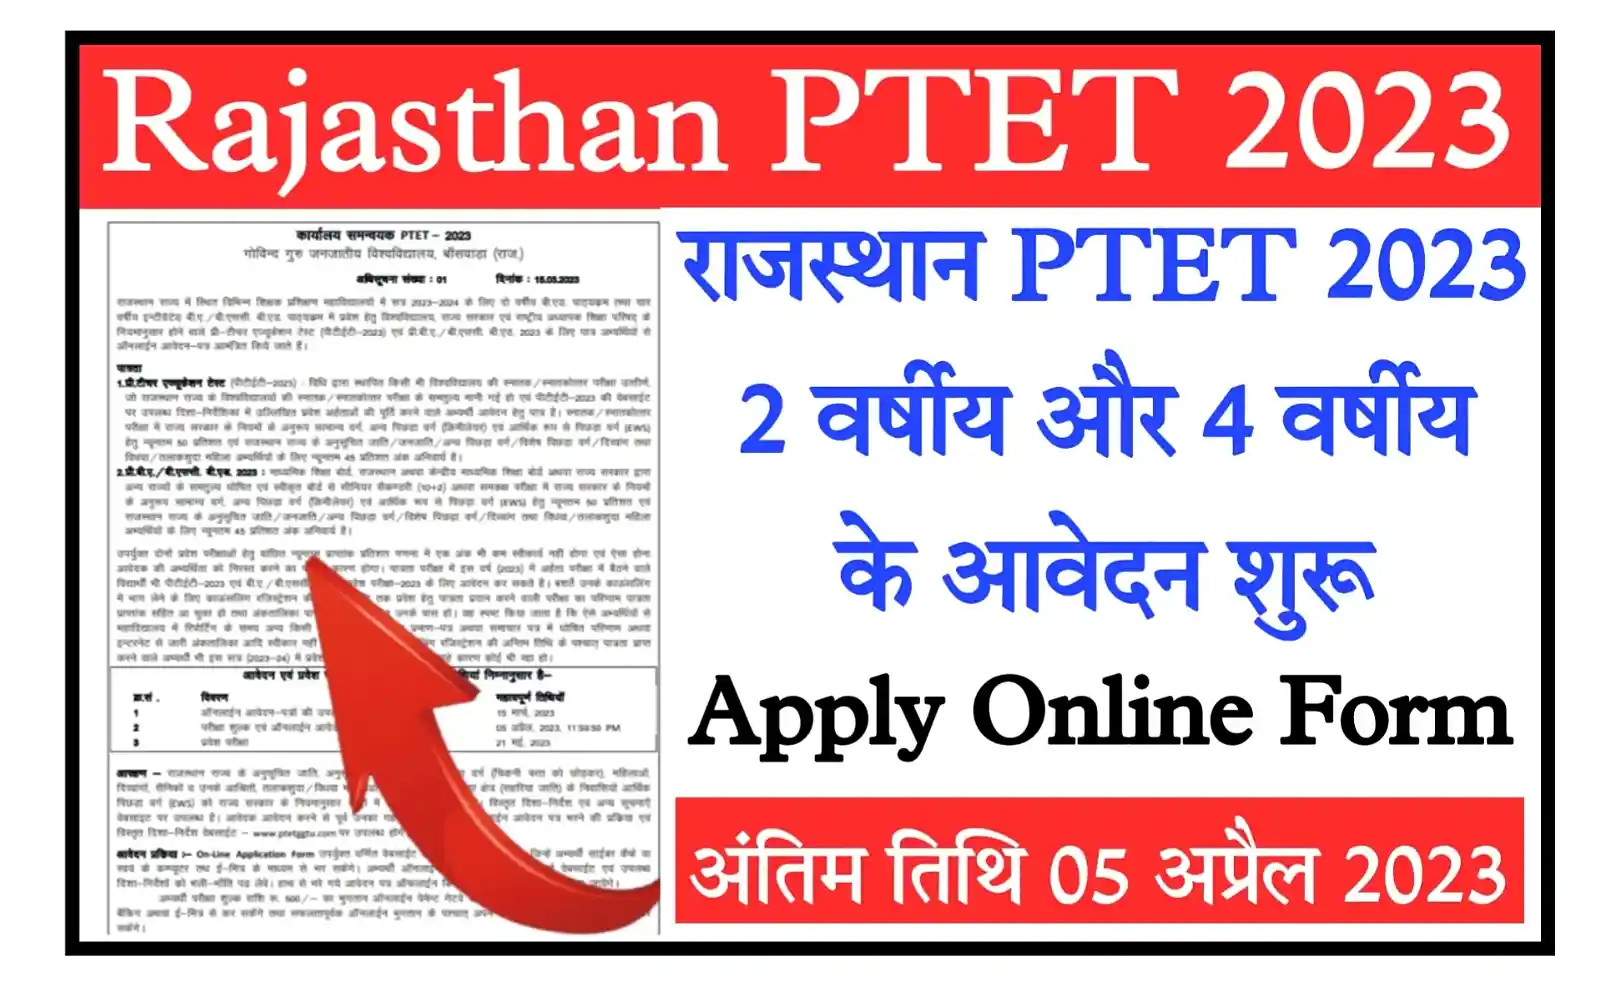 Rajasthan PTET 2023 Notification, Apply Online राजस्थान पीटीईटी 2023 का नोटिफिकेशन जारी, ऑनलाइन आवेदन शुरू